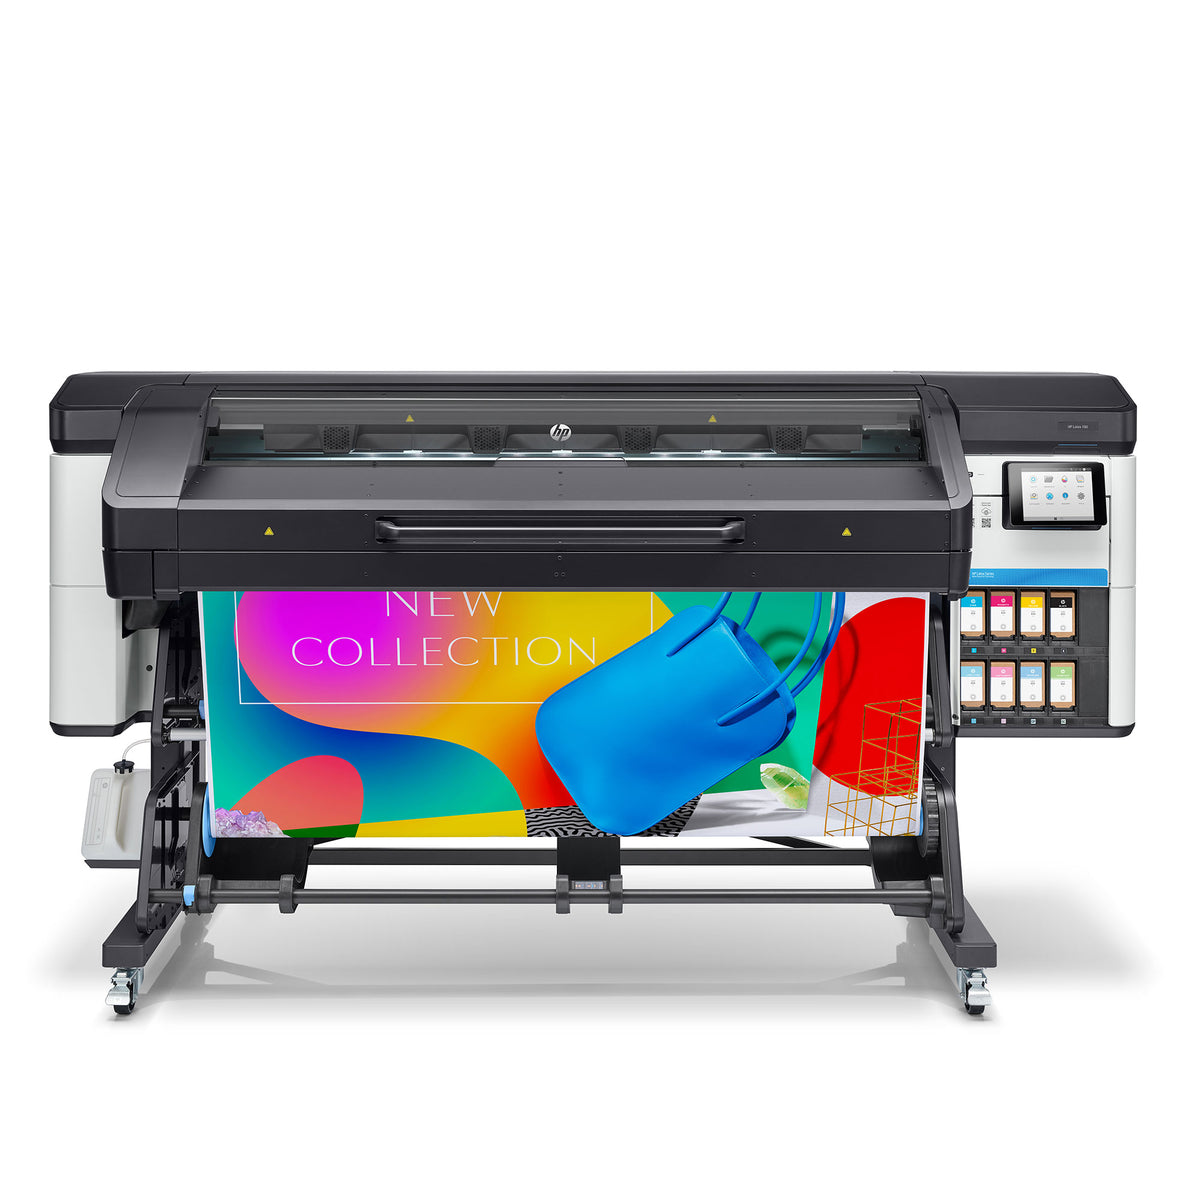 HP LATEX 700 Printer